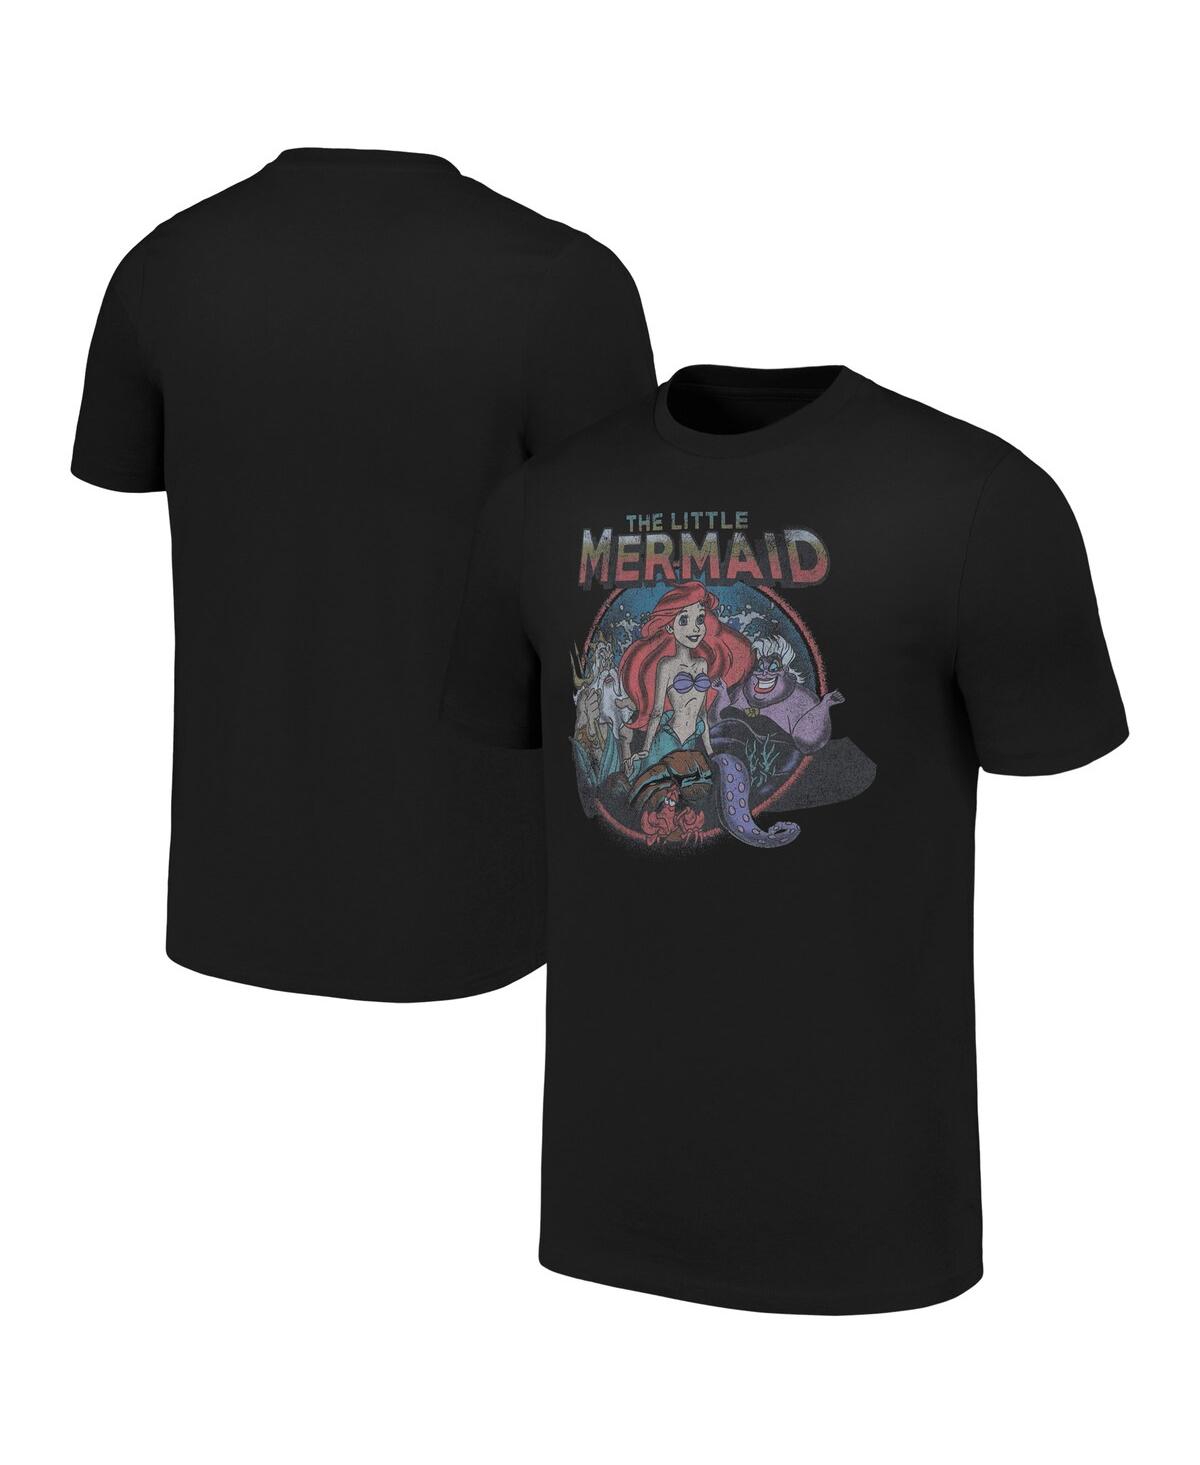 Men's and Women's Black The Little Mermaid T-shirt - Black